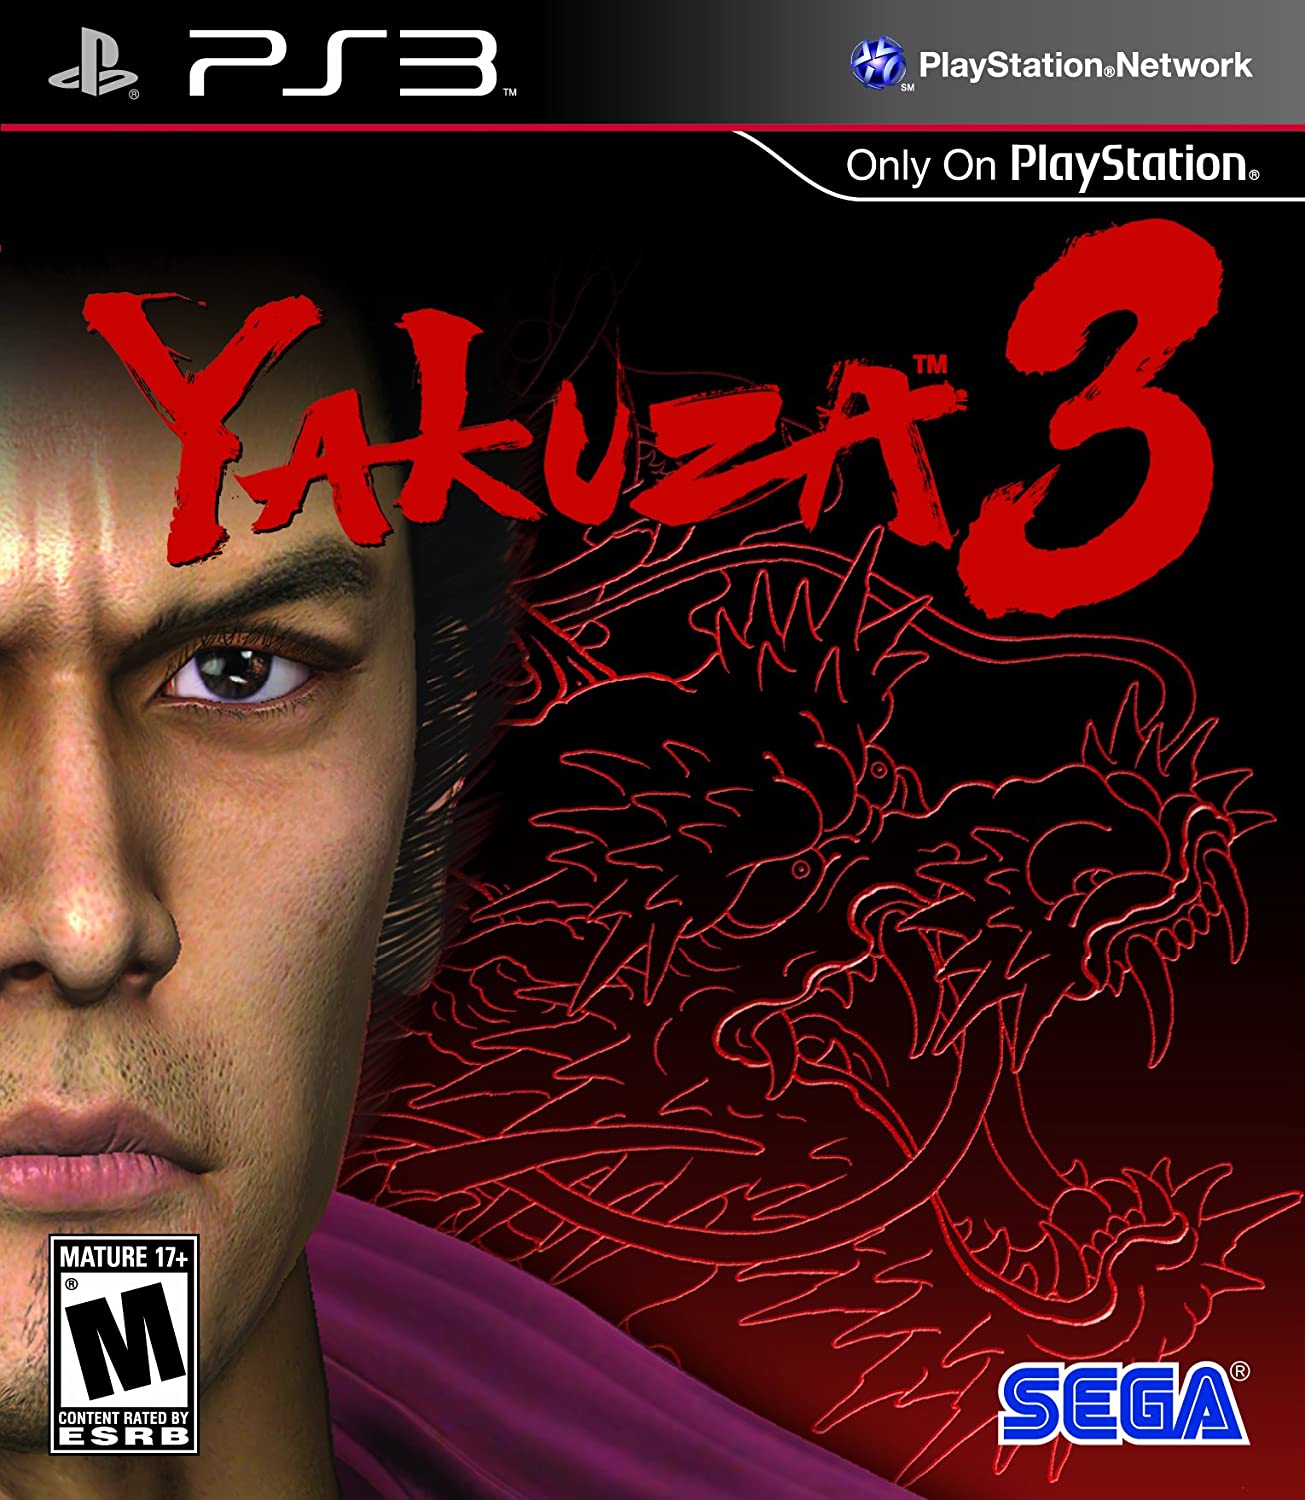 Yakuza 3 PS3